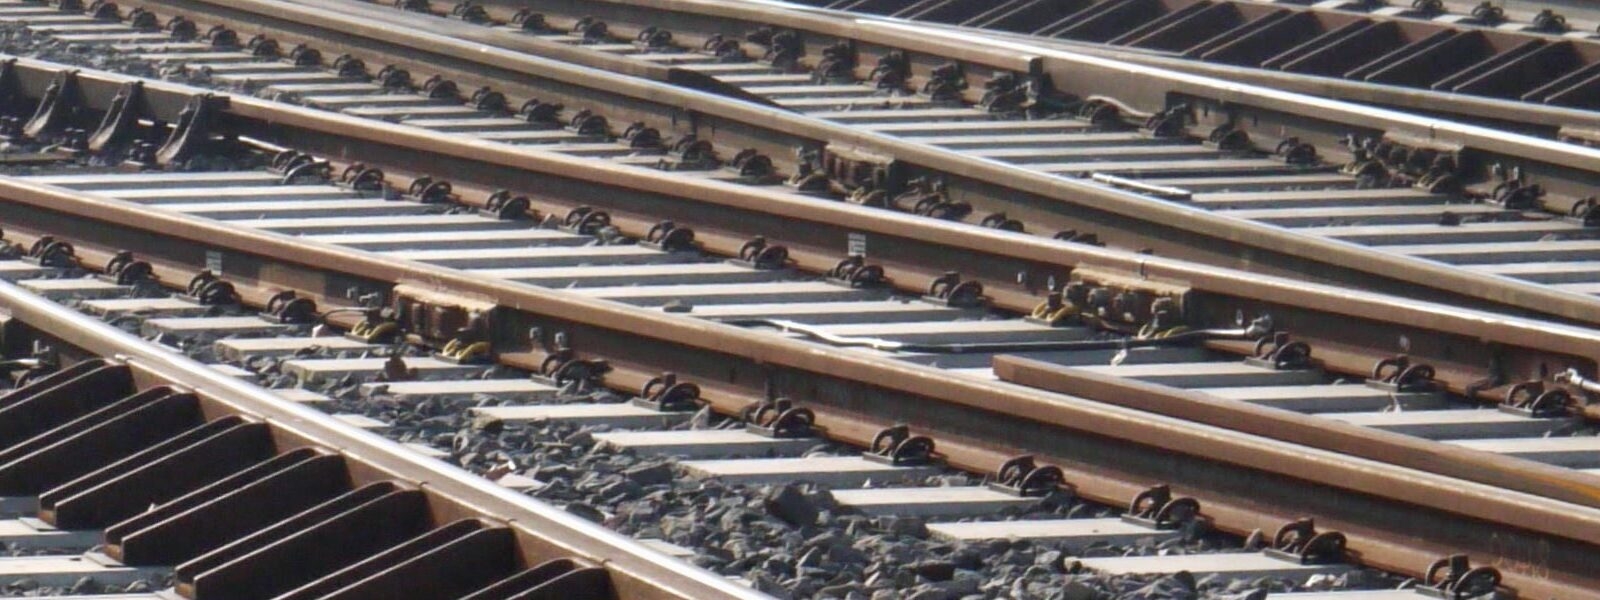 Ferrovie: prosegue trattativa rinnovo Ccnl